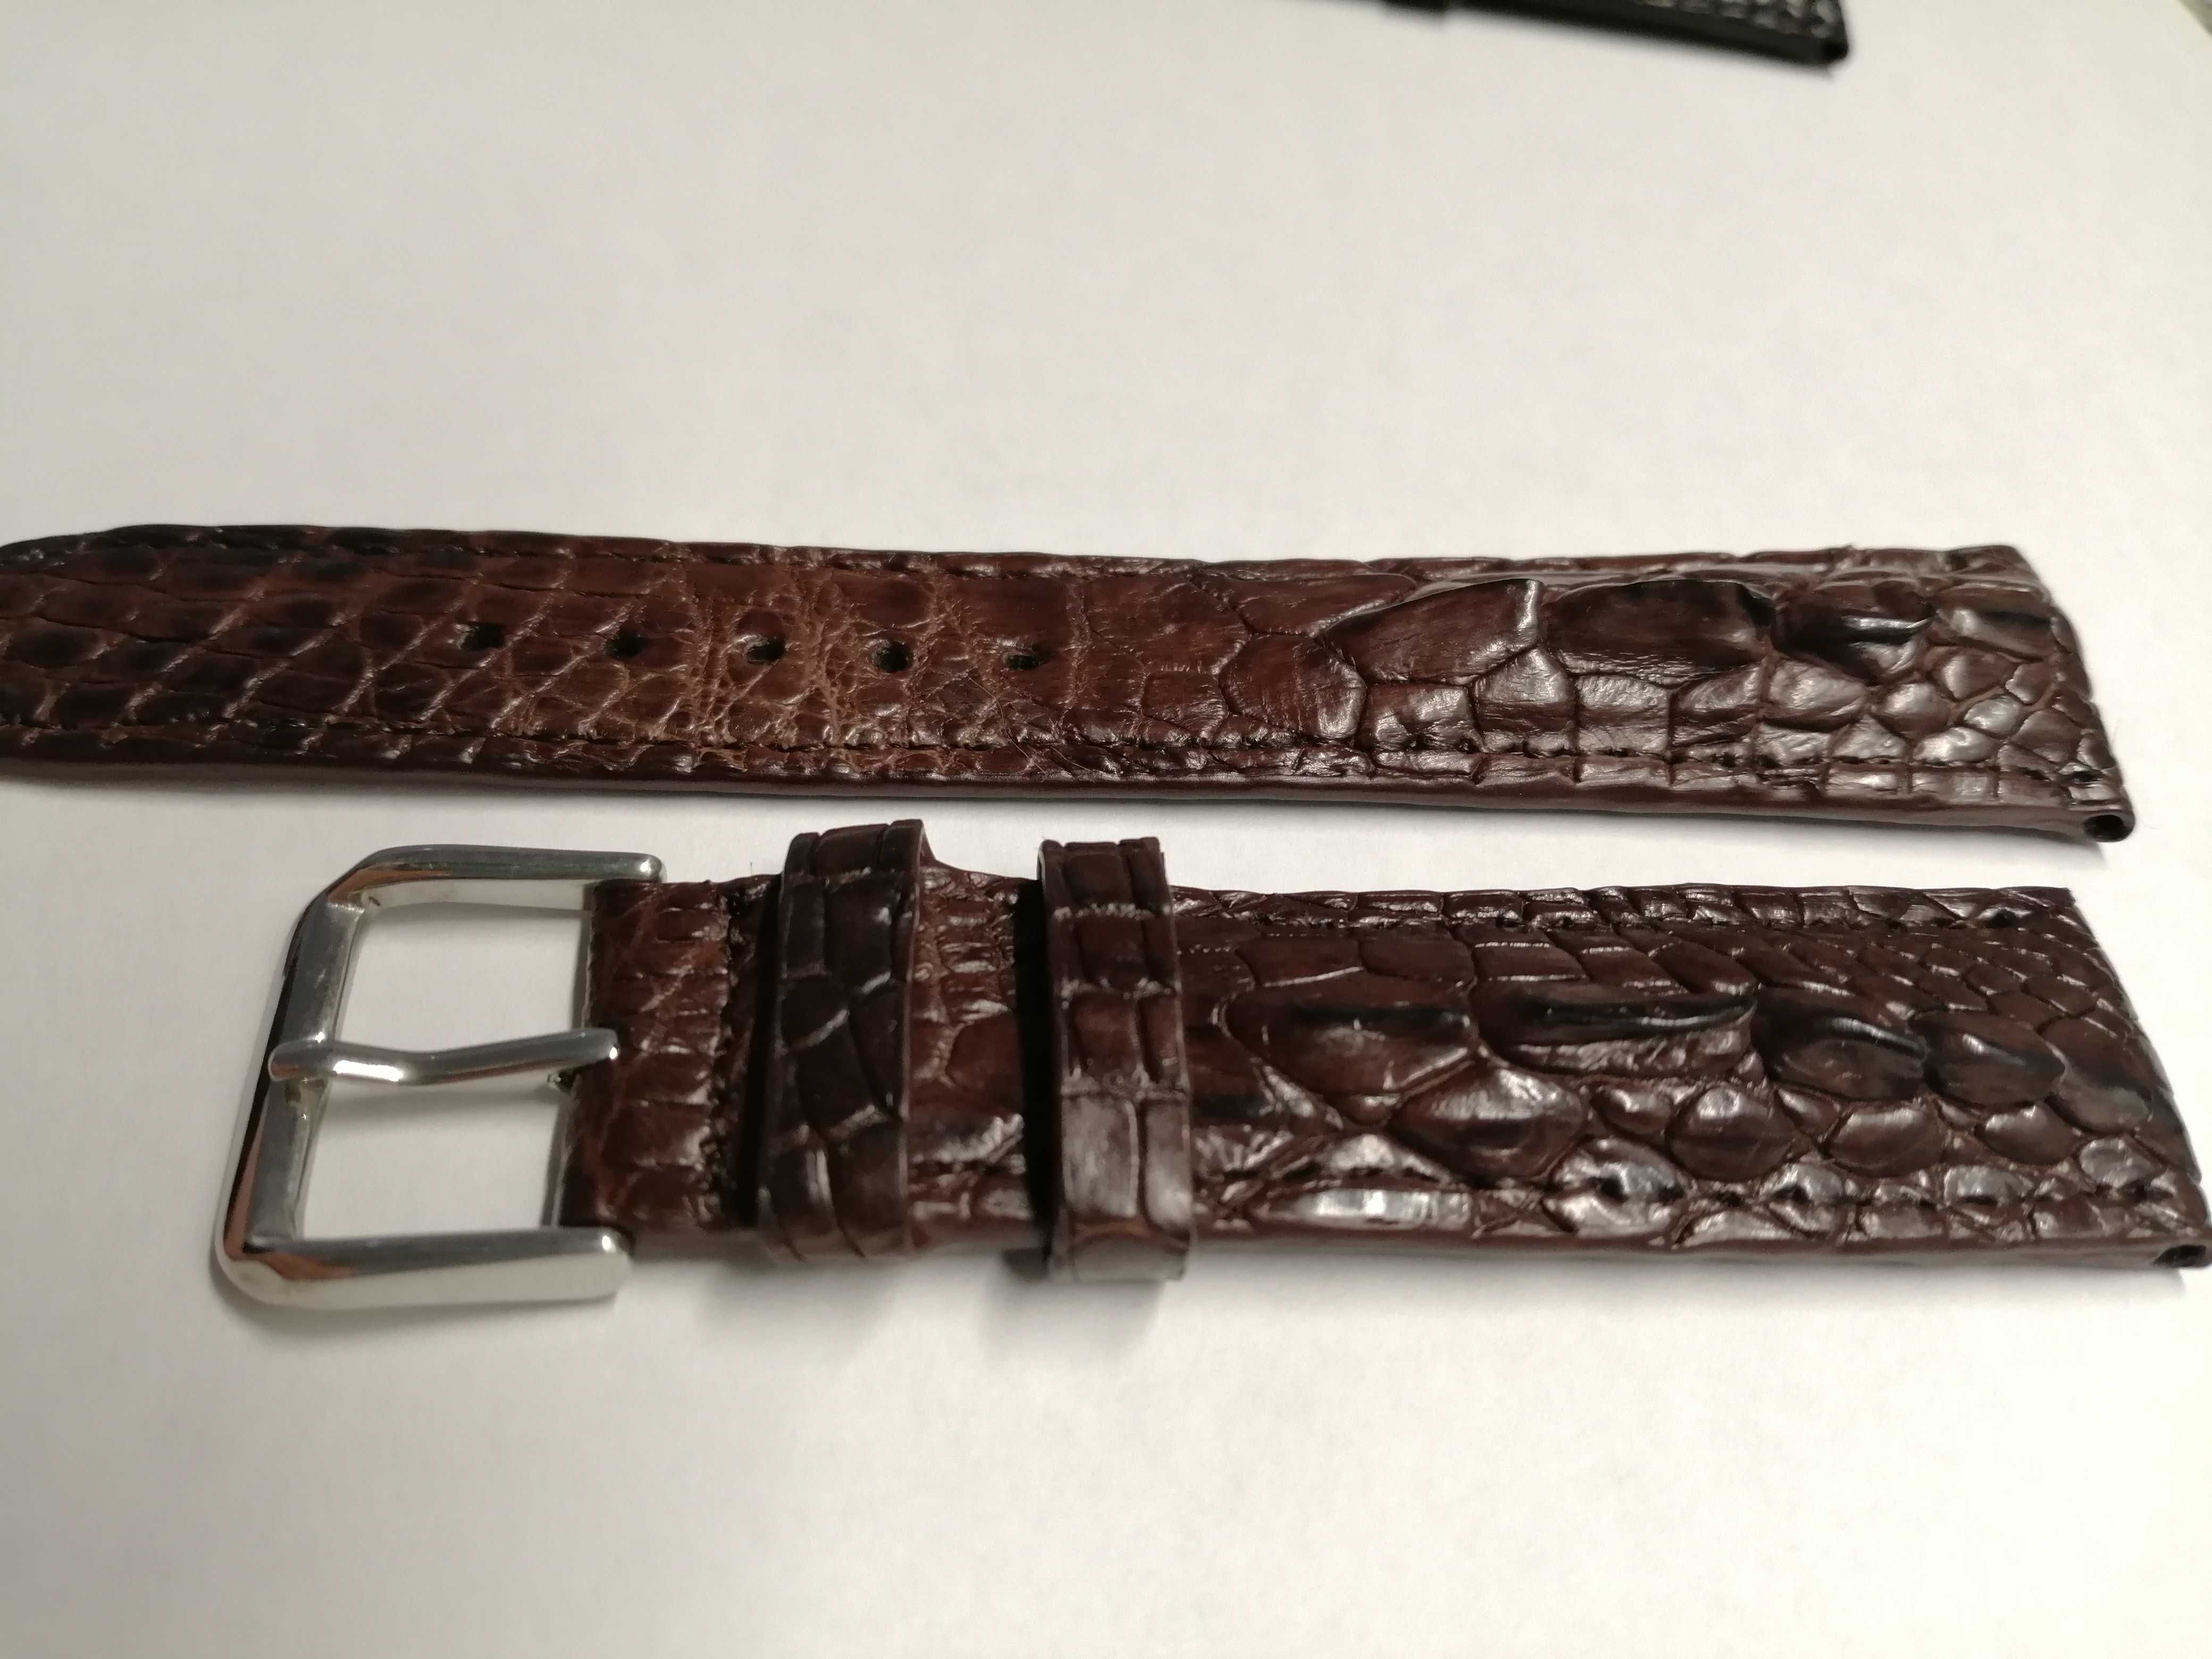 Bracelete de crocodilo real para relógio de pulso 20mm 100 % novo